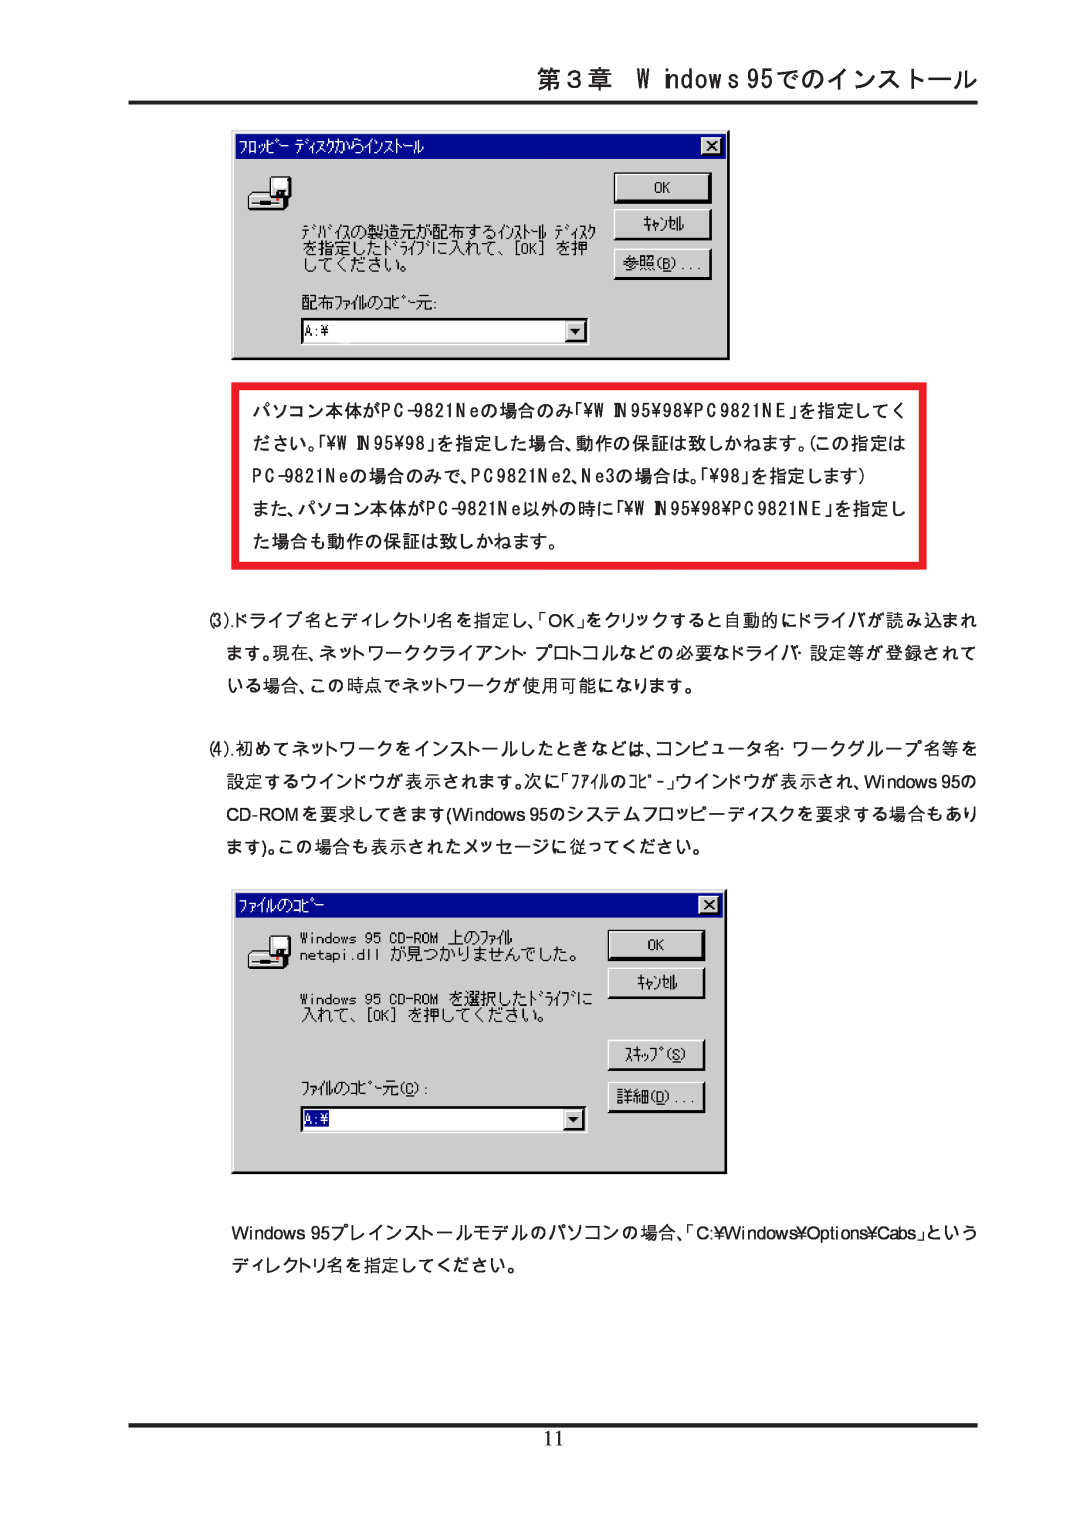 Ratoc Systems REX-R280 manual 第３章 Windows 95でのインストール, Windows 95プレインストールモデルのパソコンの場合、「C¥Windows¥Options¥Cabs」という 